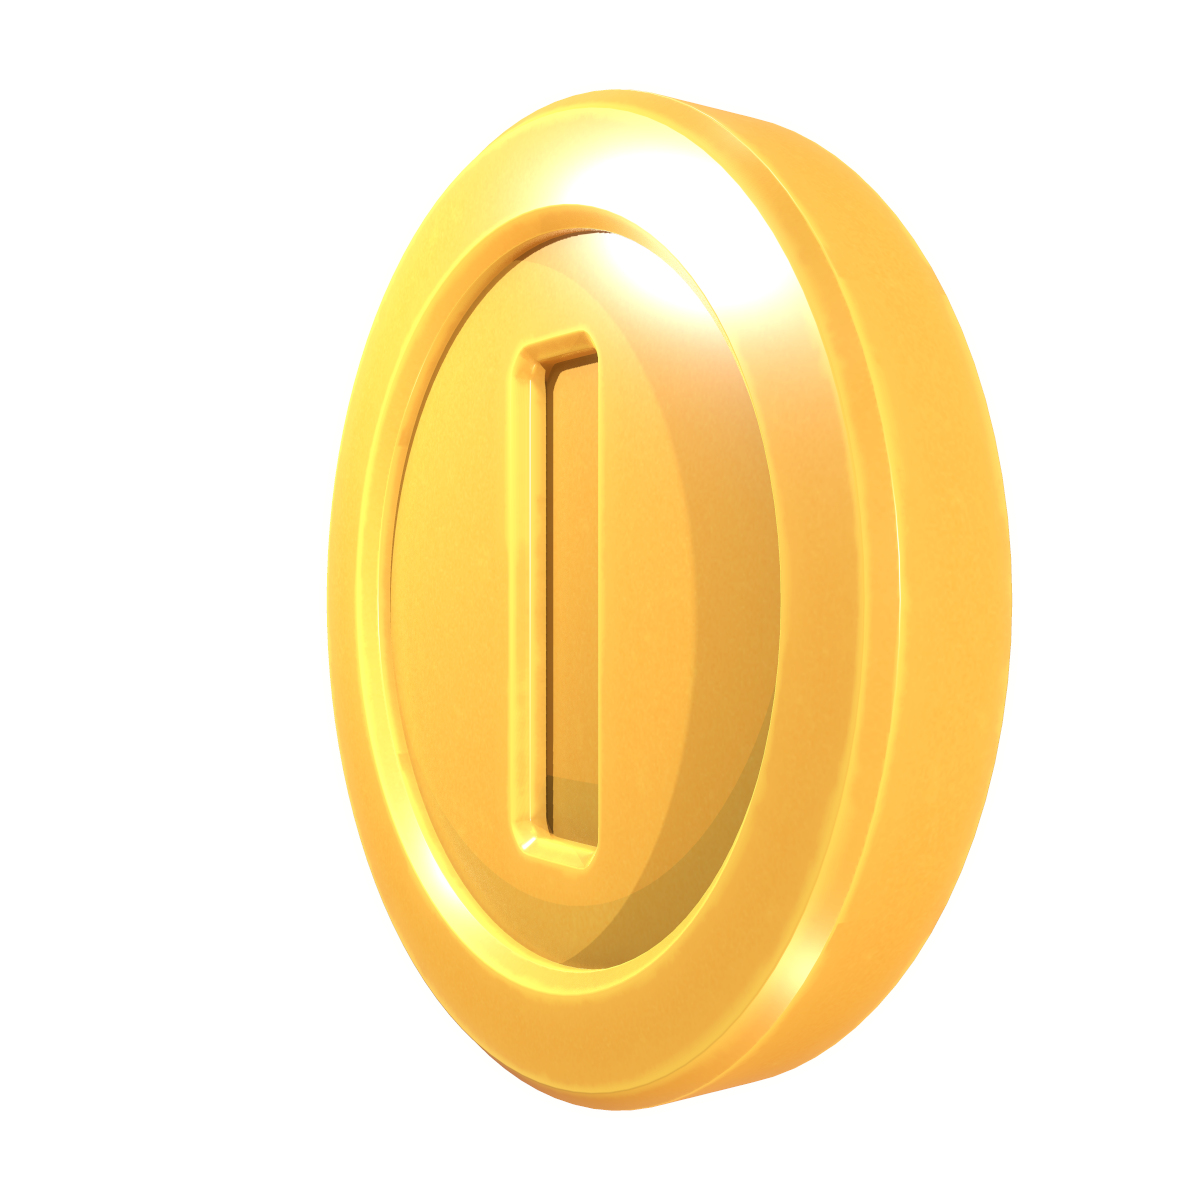 3D model Gold Coin Super Mario Animated - TurboSquid 1855293